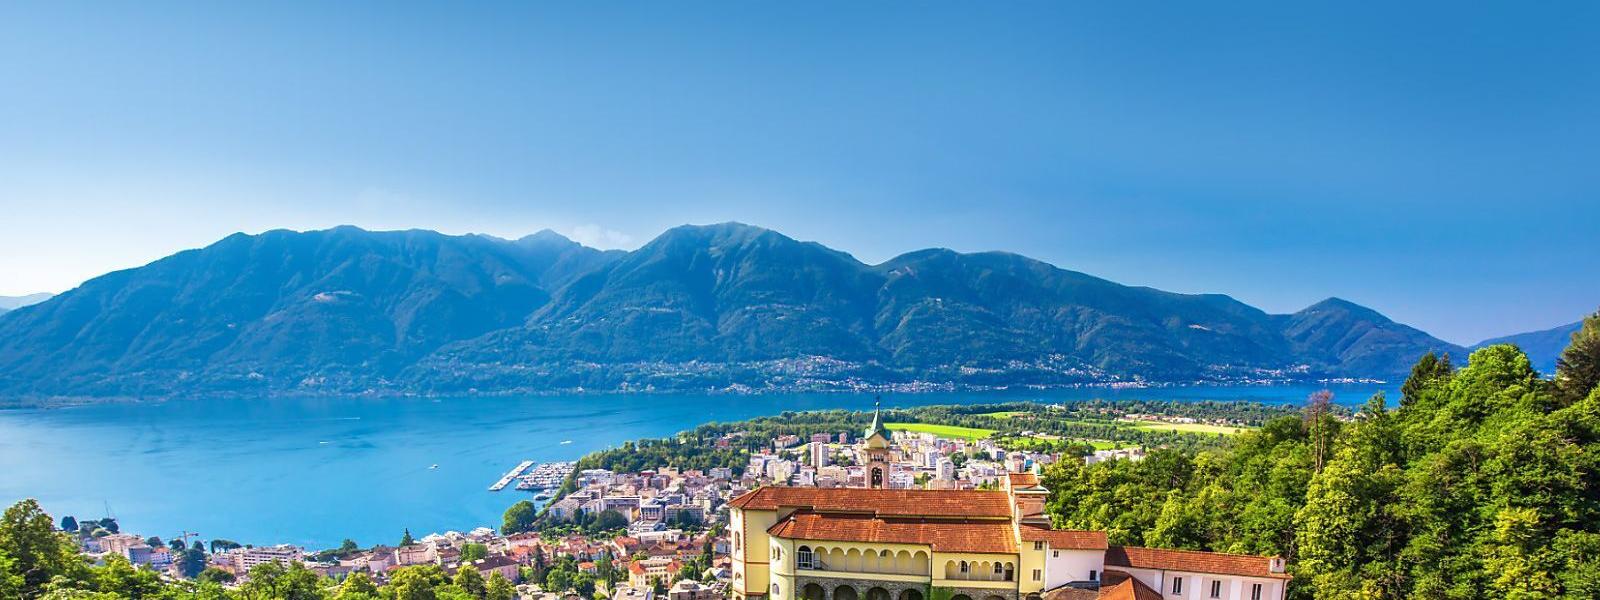 Ferienwohnungen und Ferienhäuser am Lago Maggiore - atraveo